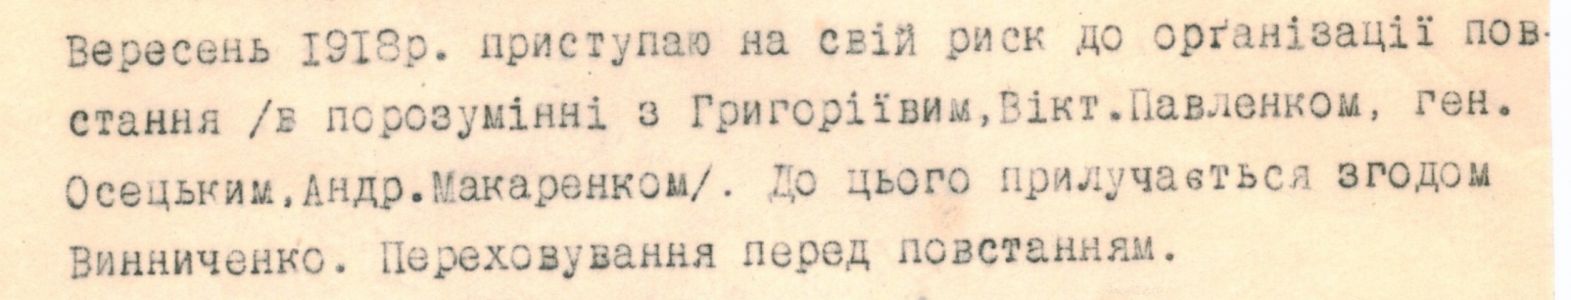 Про організацію підготовки повстання проти гетьманату - зі споминів М. Шаповала. Вересень 1918 р.